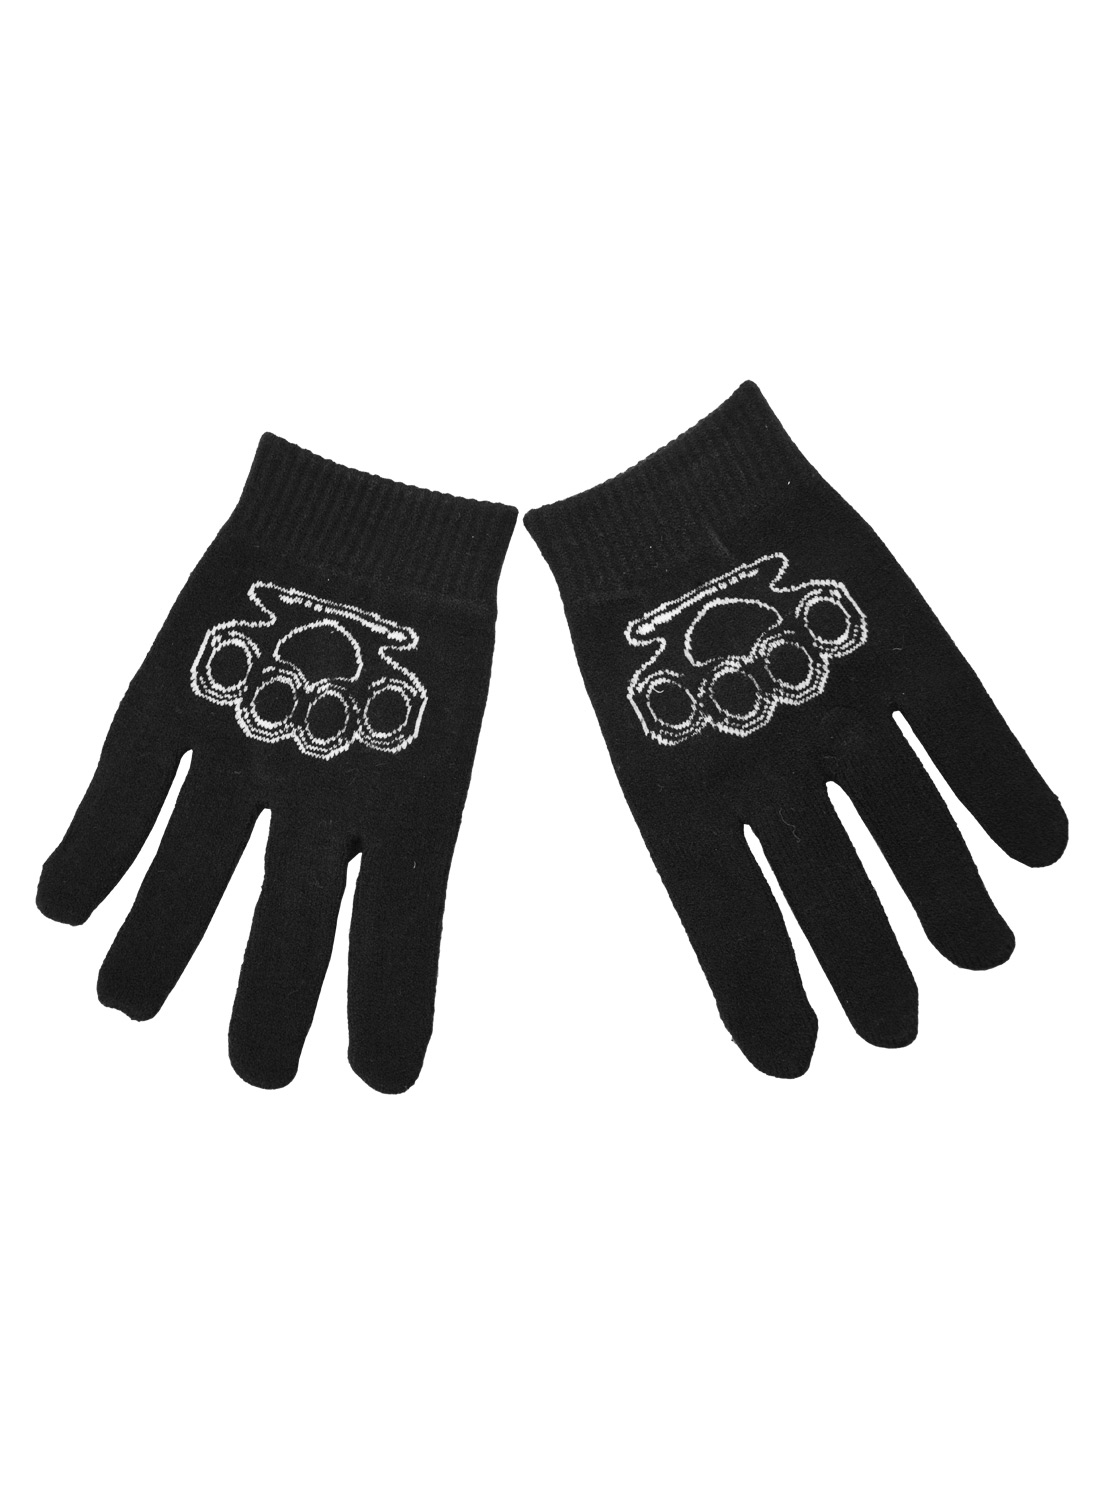 BGG Gloves knuckle